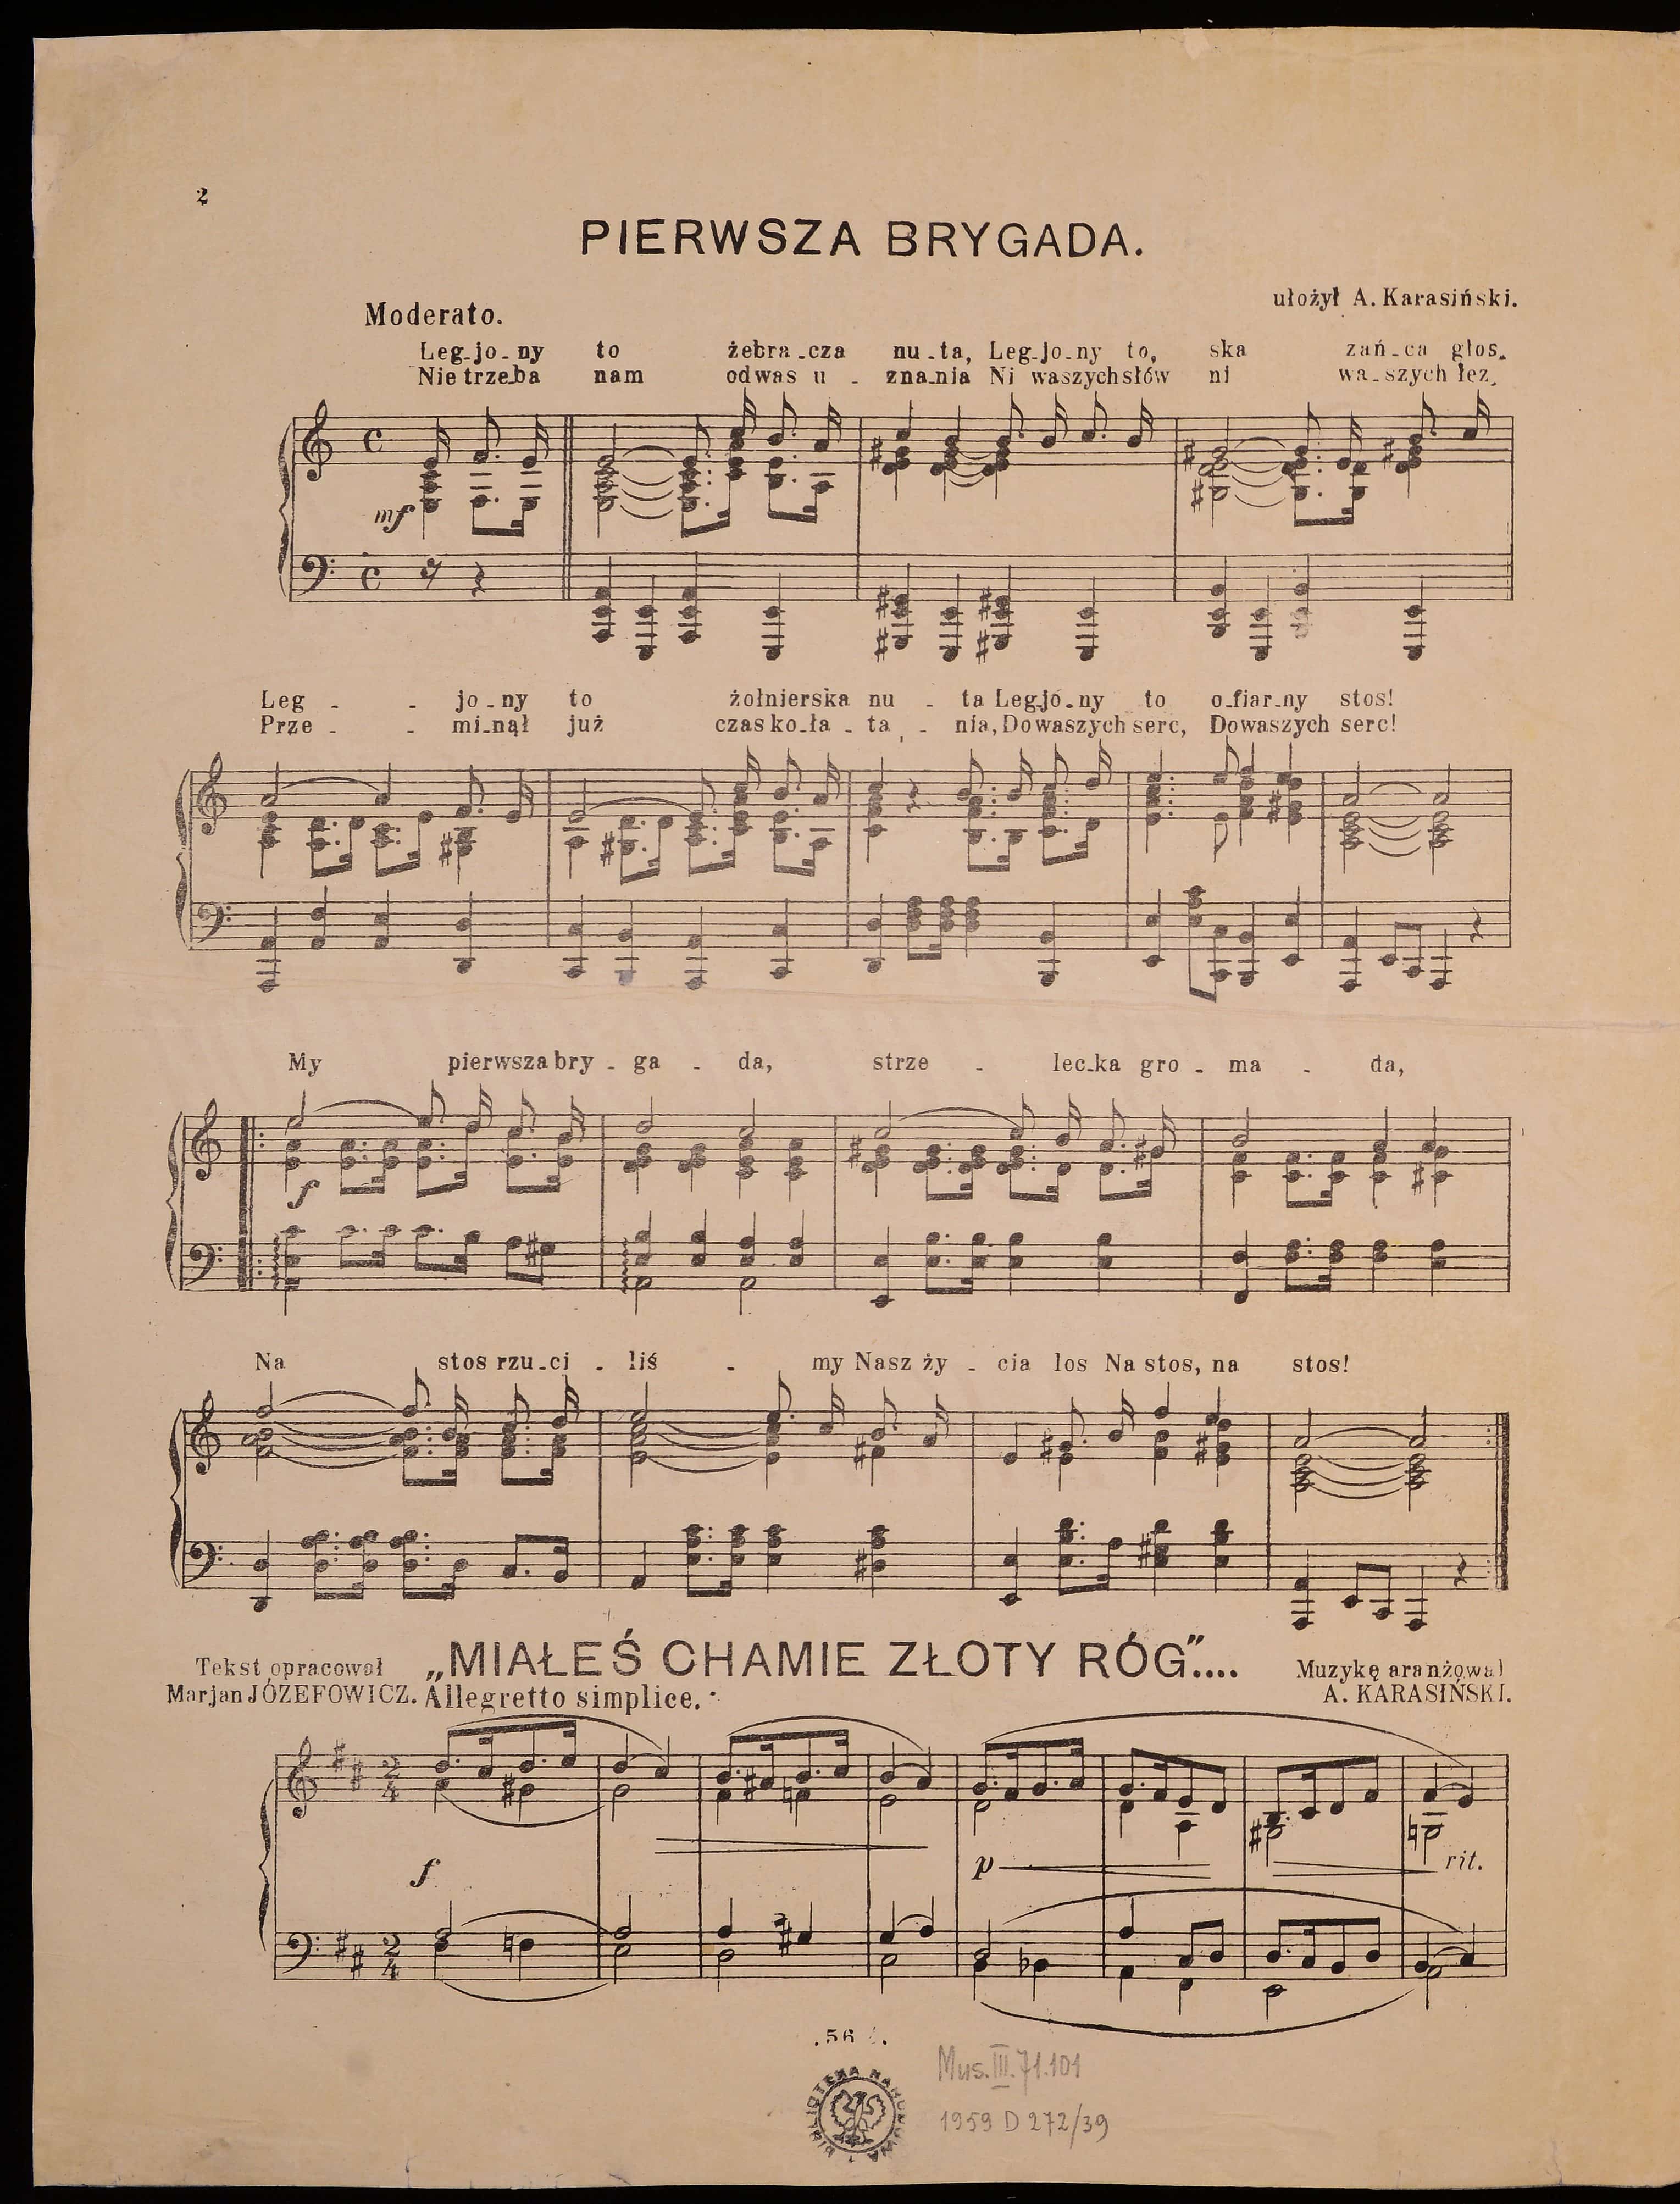 Partytura utworu „Pierwsza brygada” (ca. 1920). Źródło: Polona